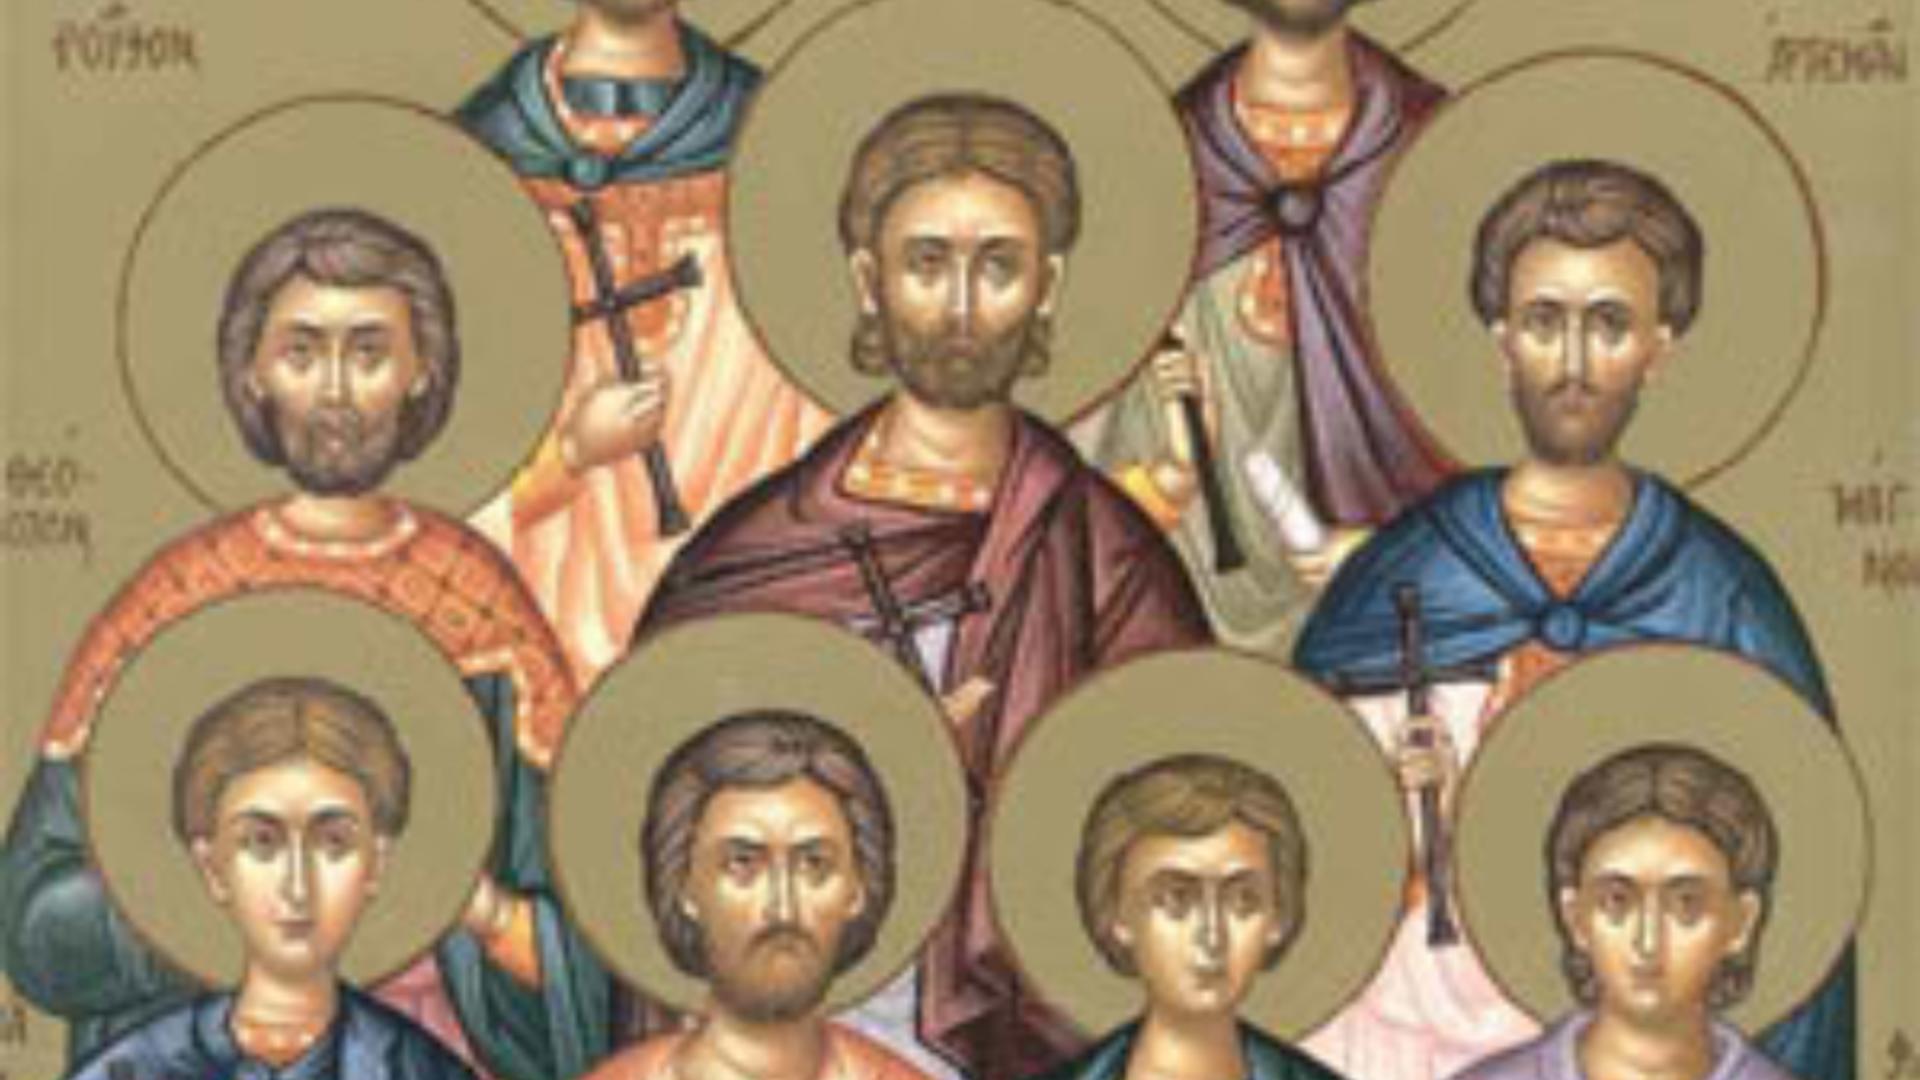 Sărbătoare 19 august – Patru sfinți foarte importanți sunt pomeniți în calendarul ortodox în această zi mare